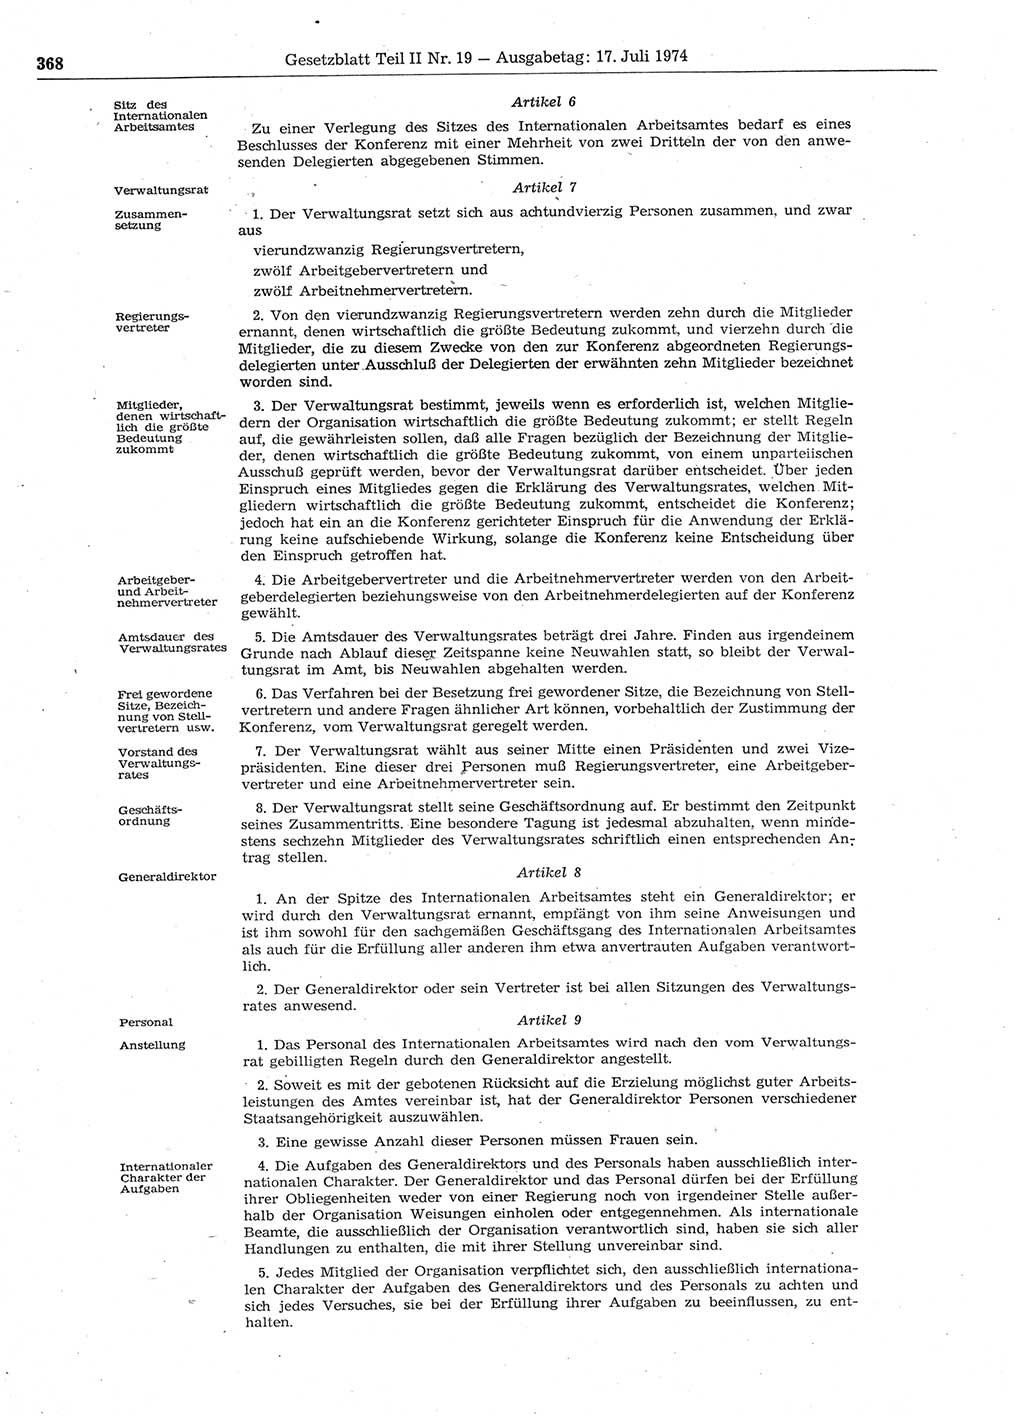 Gesetzblatt (GBl.) der Deutschen Demokratischen Republik (DDR) Teil ⅠⅠ 1974, Seite 368 (GBl. DDR ⅠⅠ 1974, S. 368)